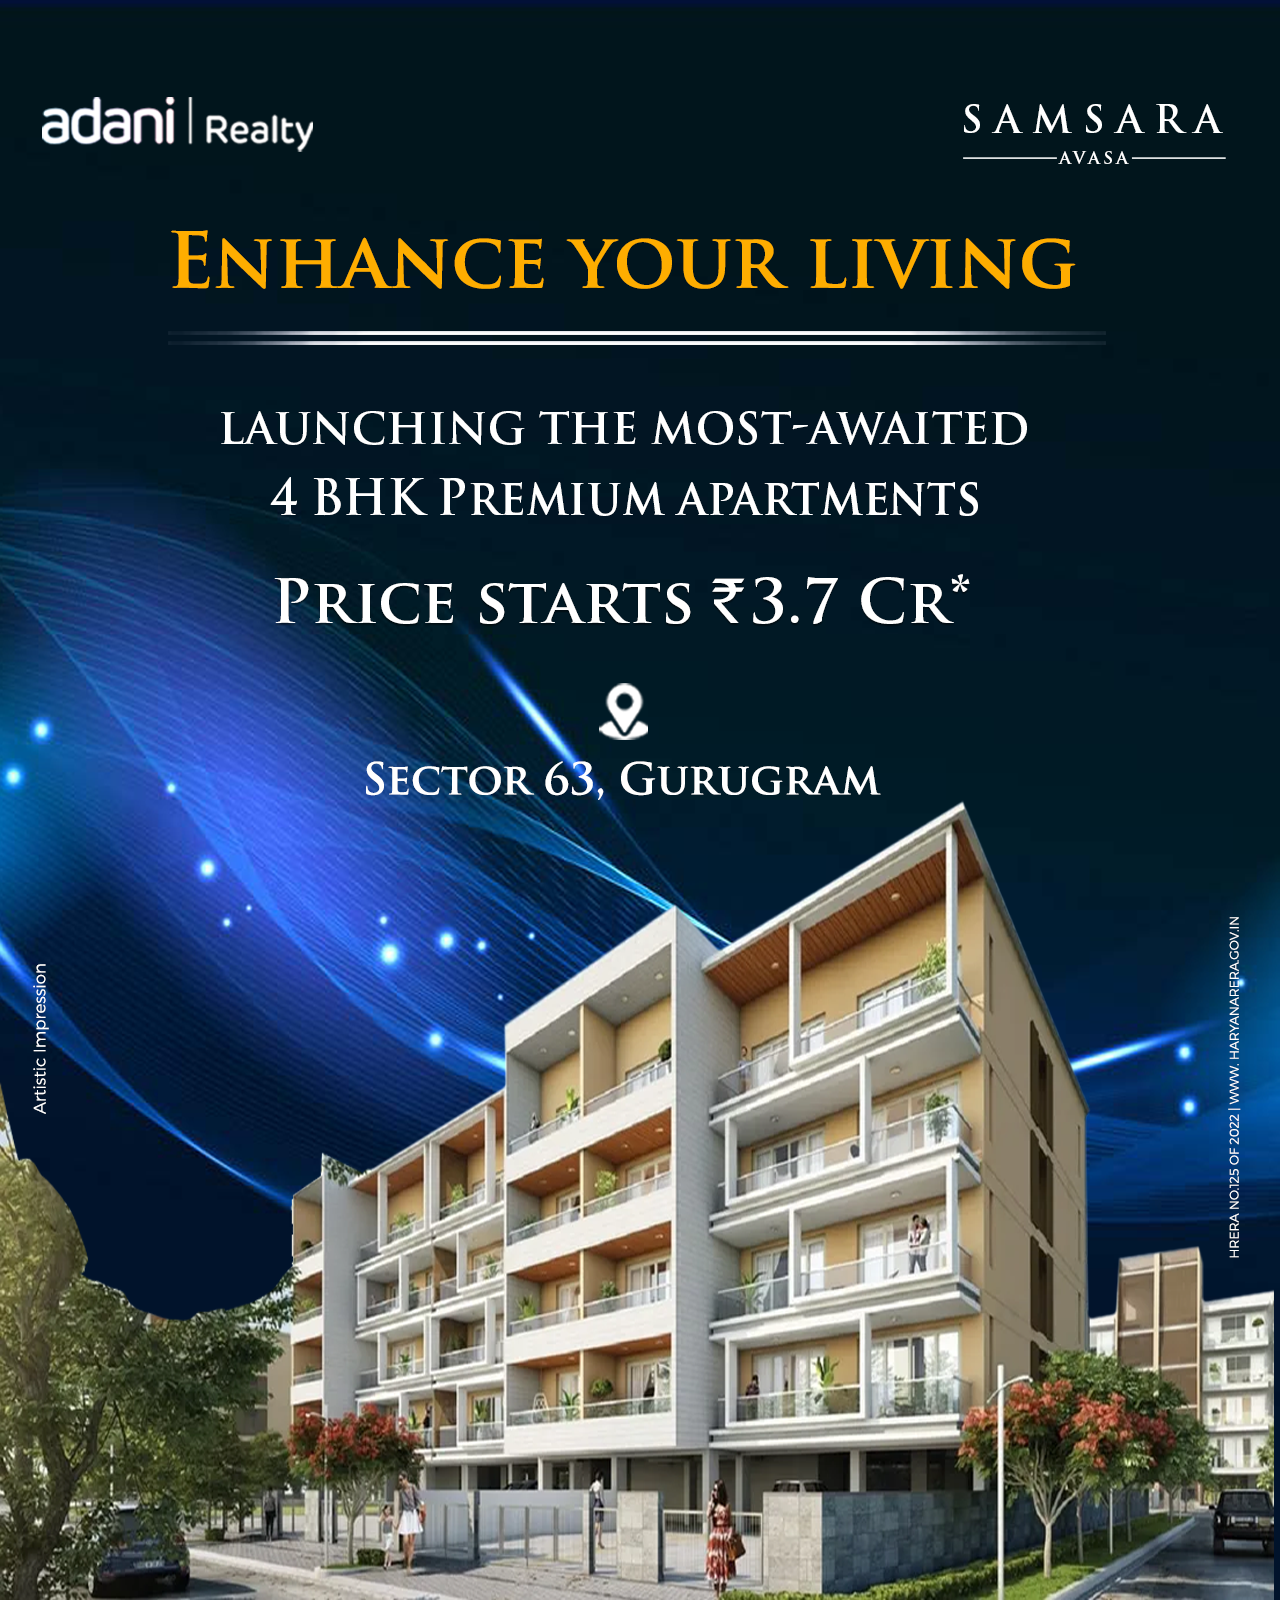 Launching the most awaited 4 BHK premimum apartments Rs 3.7 Cr at Adani Samsara Avasa, Gurgaon Update